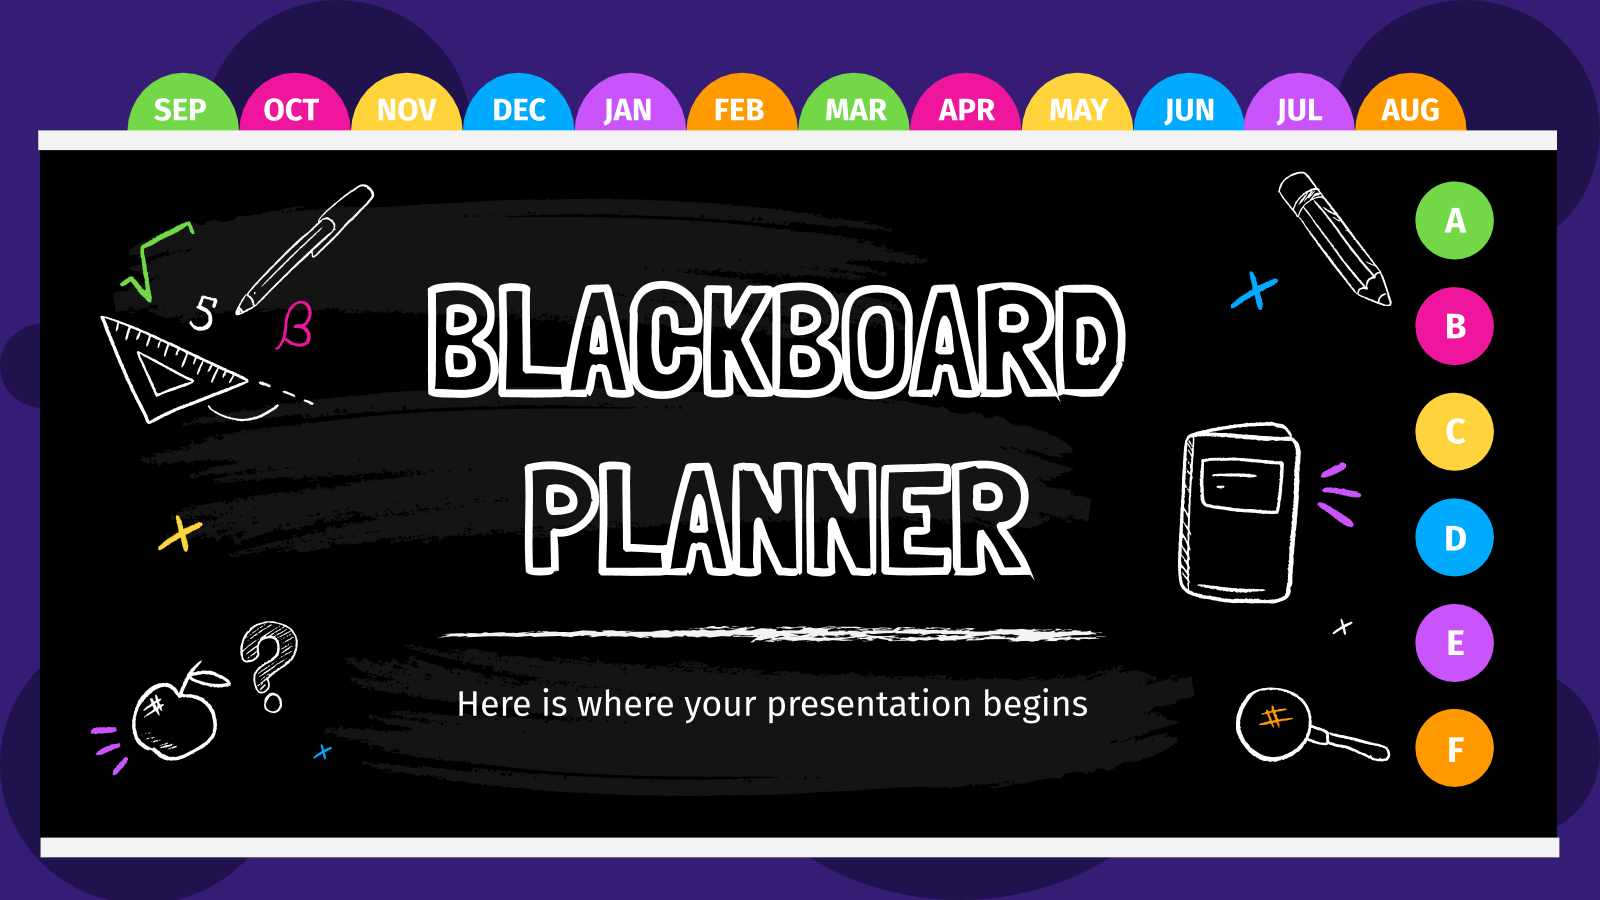 Blackboard Planner 和PowerPoint模板